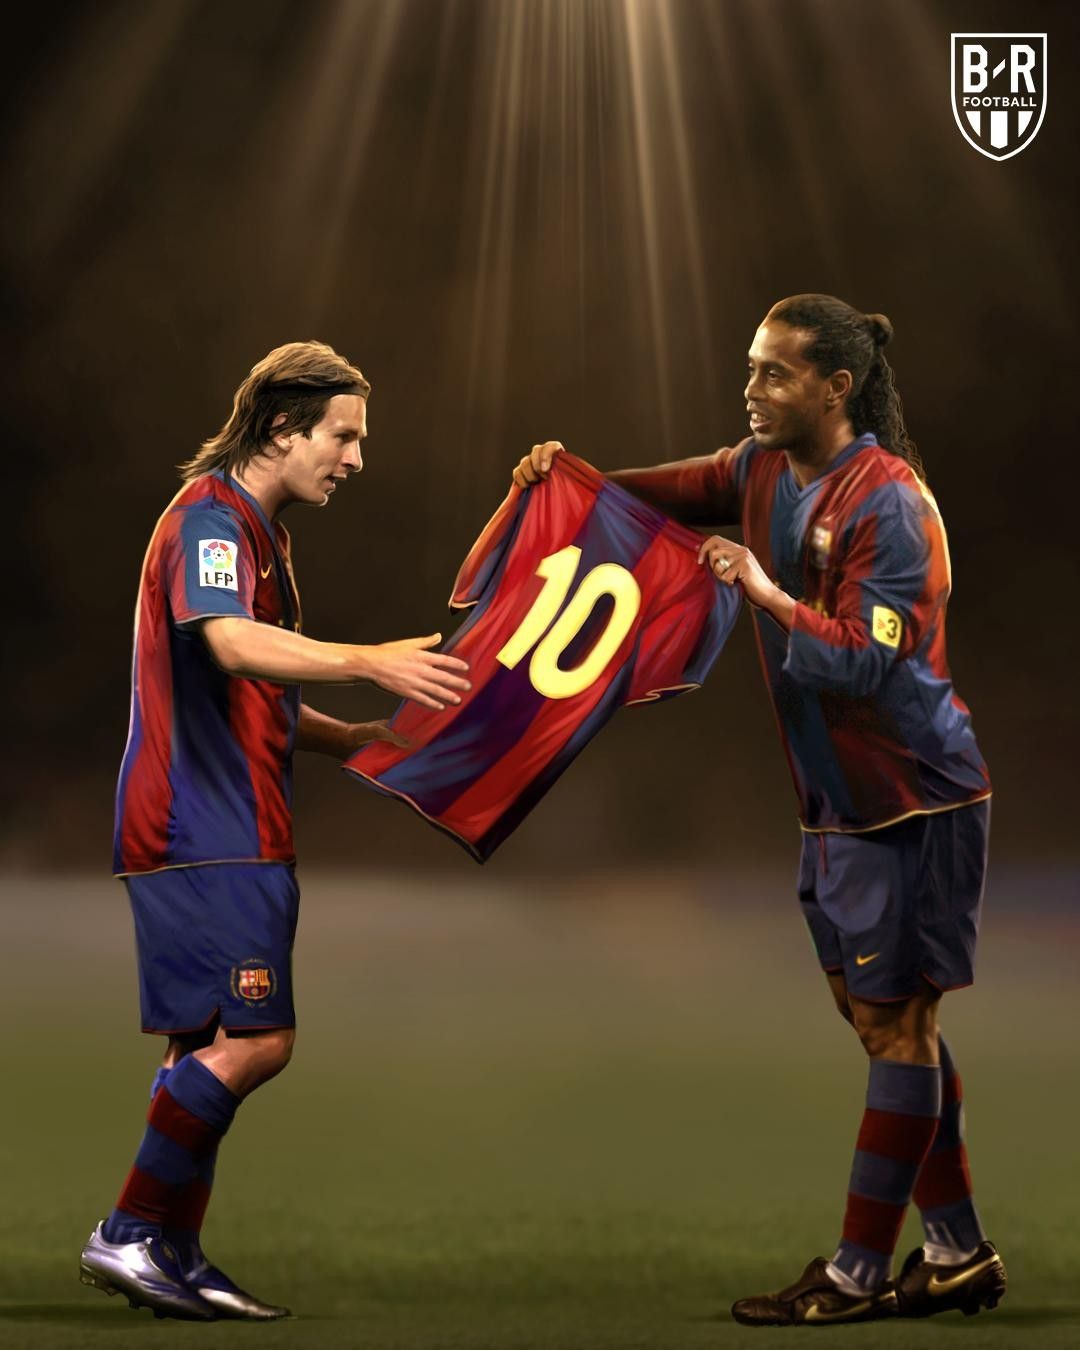 Ronaldinho và Messi, hai tên tuổi lừng danh trong thế giới bóng đá, đã chứng tỏ tài năng và sự sáng tạo của mình trong mỗi trận đấu. Họ là hai cầu thủ xuất sắc nhất trong lịch sử bóng đá và bạn không nên bỏ lỡ cơ hội để xem những hình ảnh ấn tượng của họ.